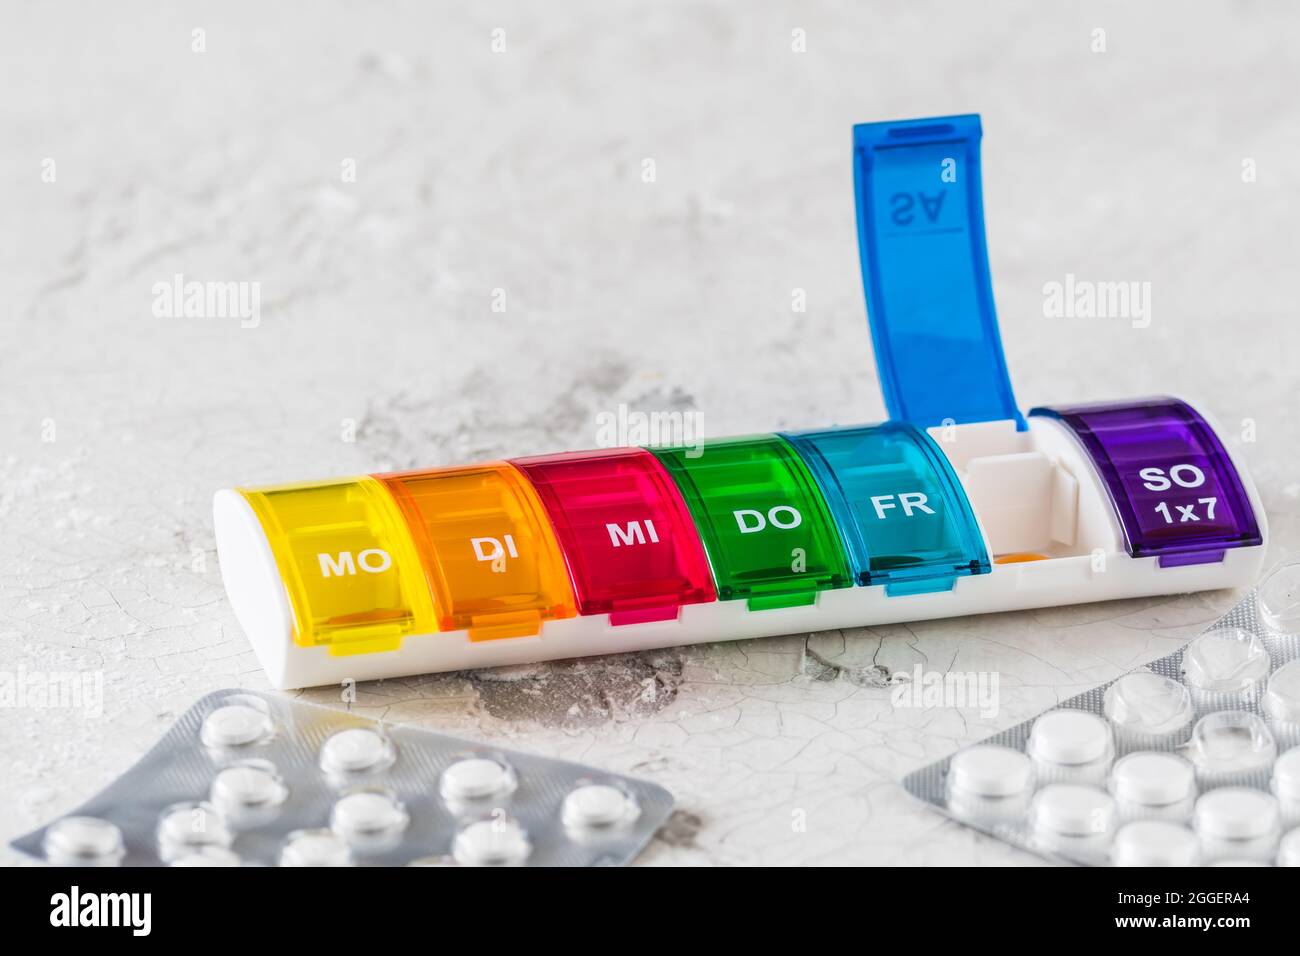 Scatola di pillole colorata per il dosaggio settimanale su sfondo bianco, abbreviazioni per giorni della settimana in tedesco Foto Stock